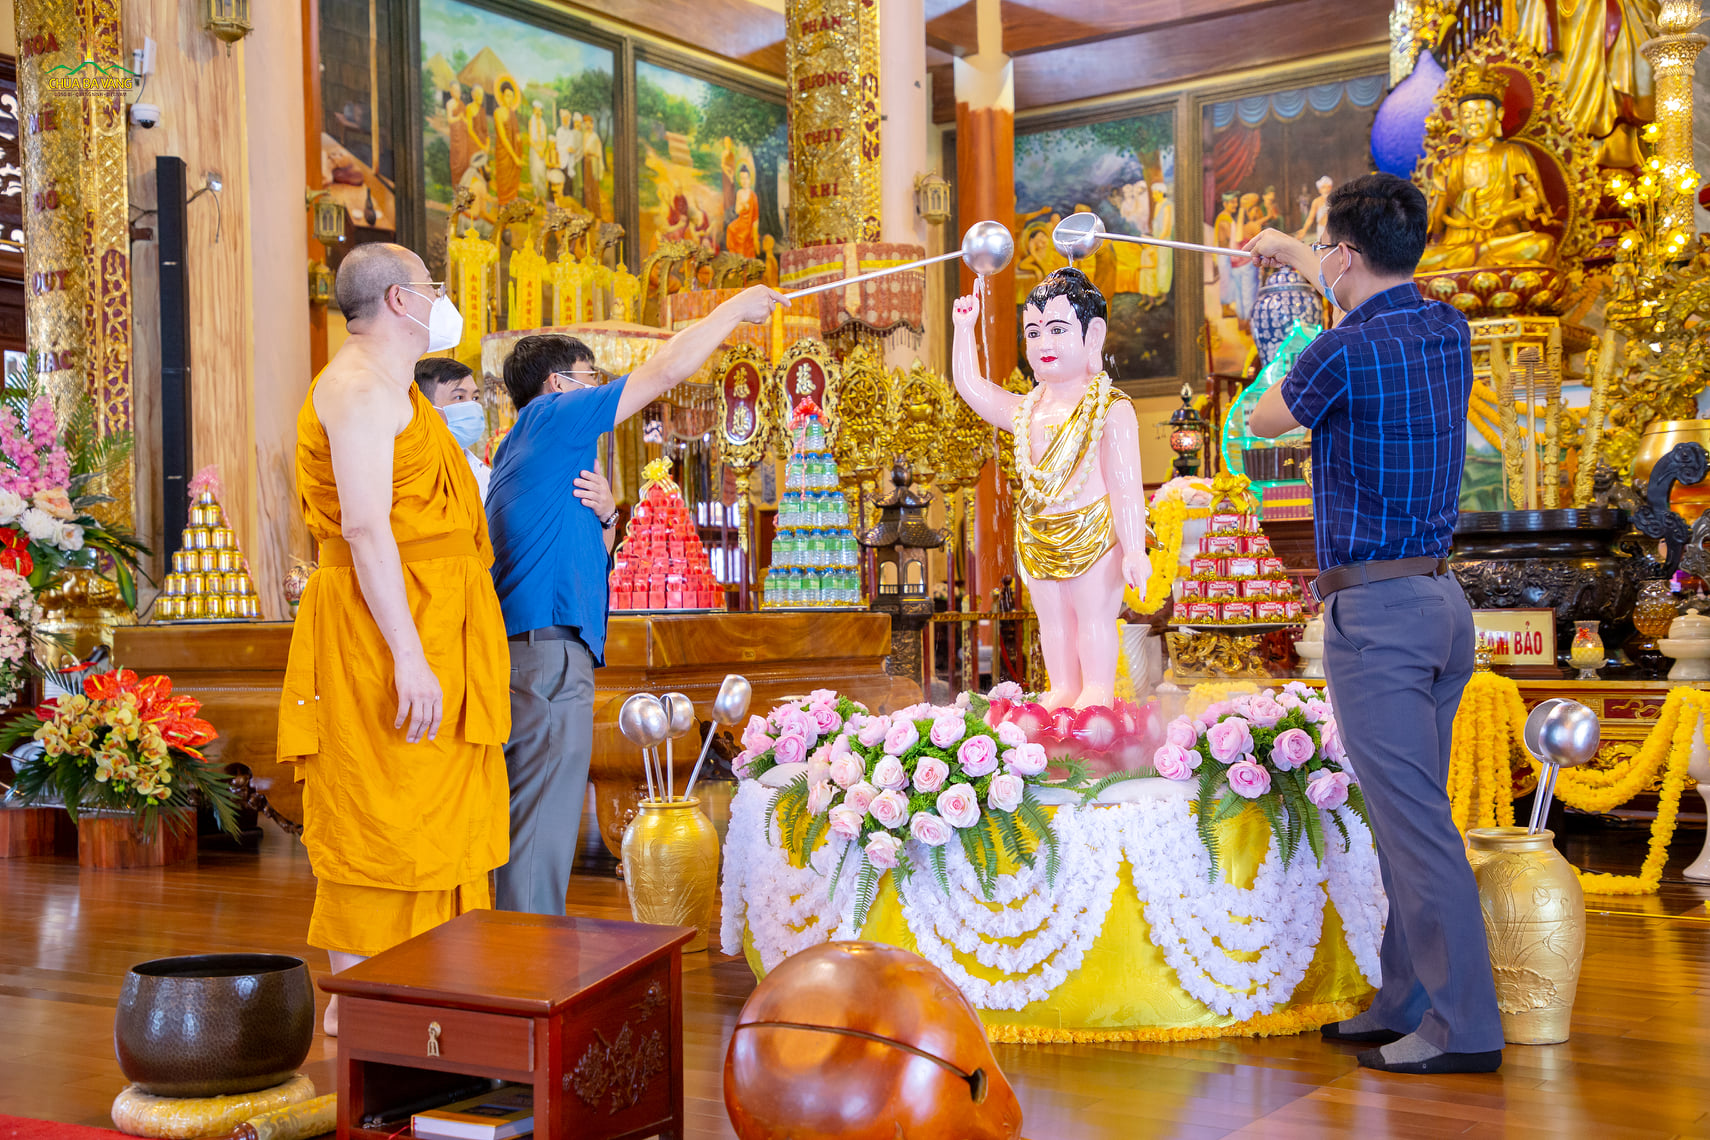 Lãnh đạo Ban Tôn giáo tỉnh Quảng Ninh hoan hỷ thực hiện nghi thức dâng nước cúng dường tắm Phật